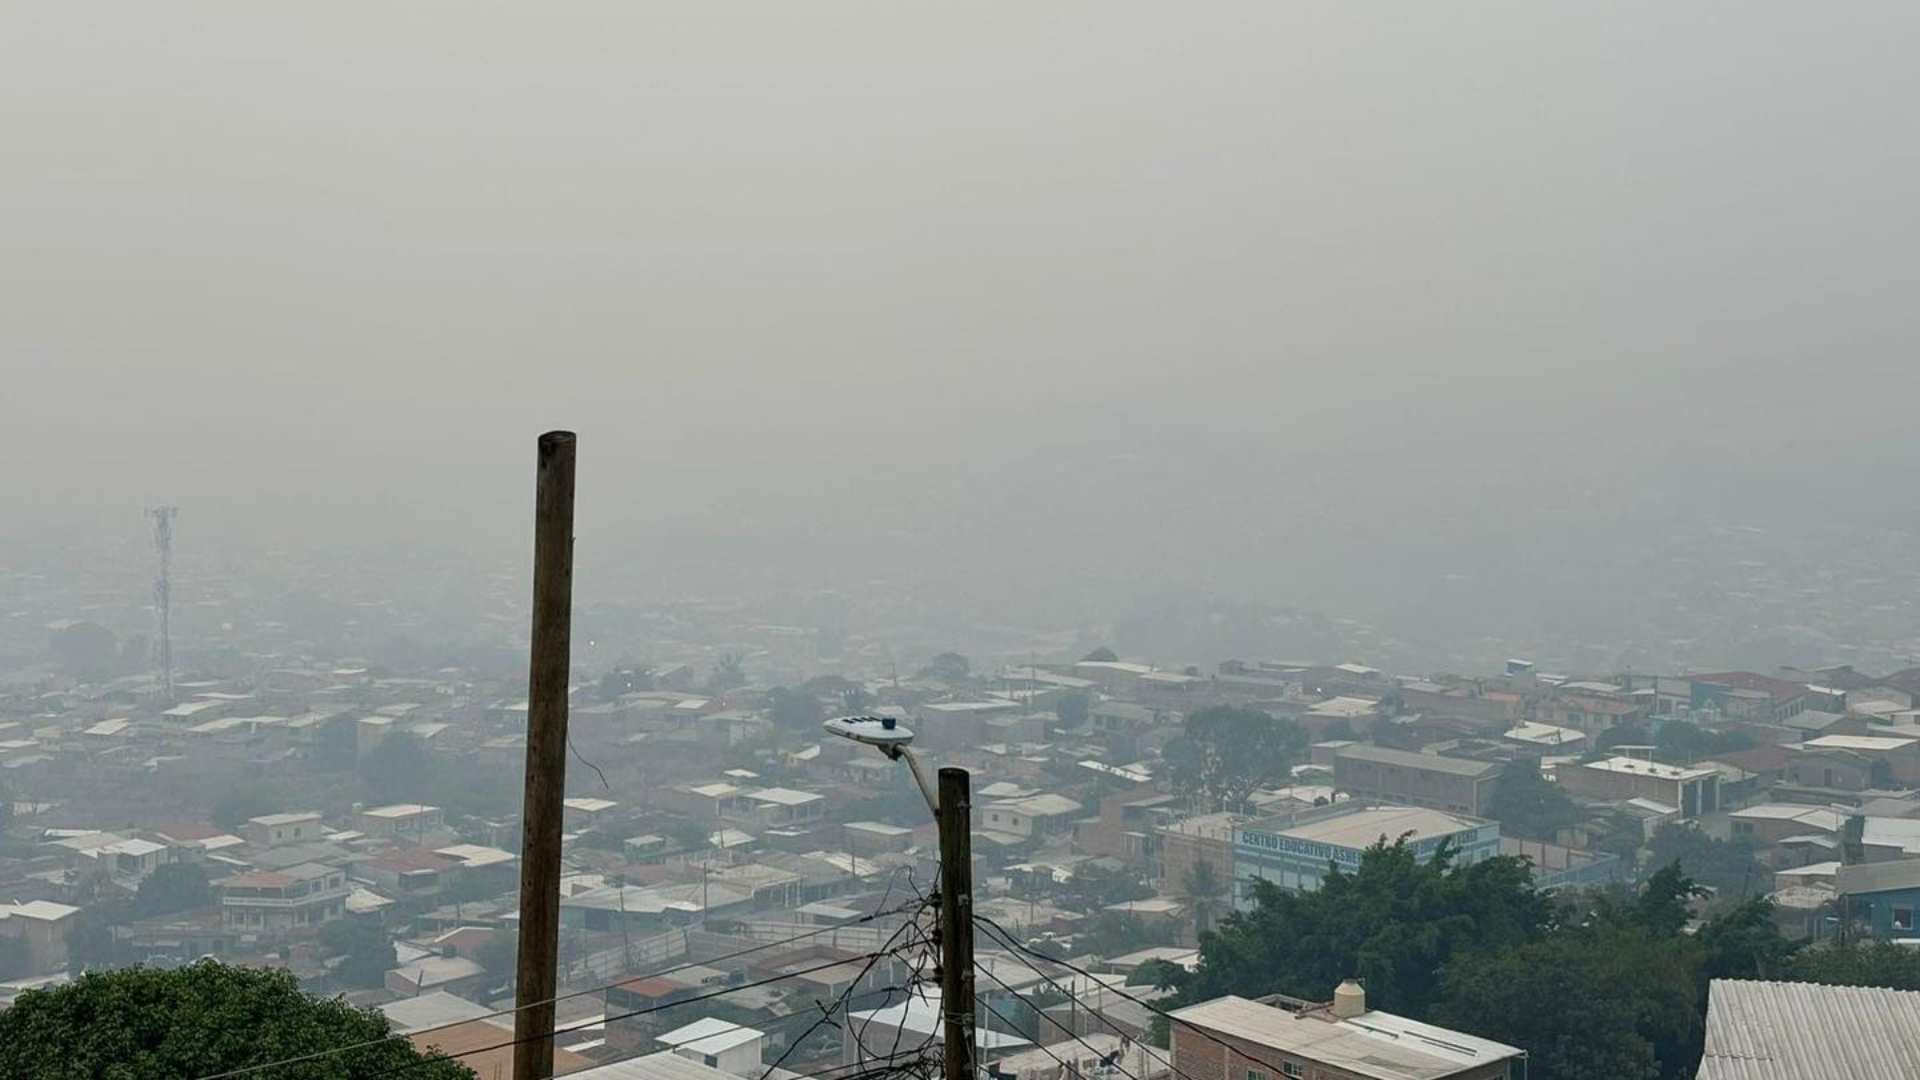 Tegucigalpa amanece repleta de humo, ¿cuál es la calidad de aire?